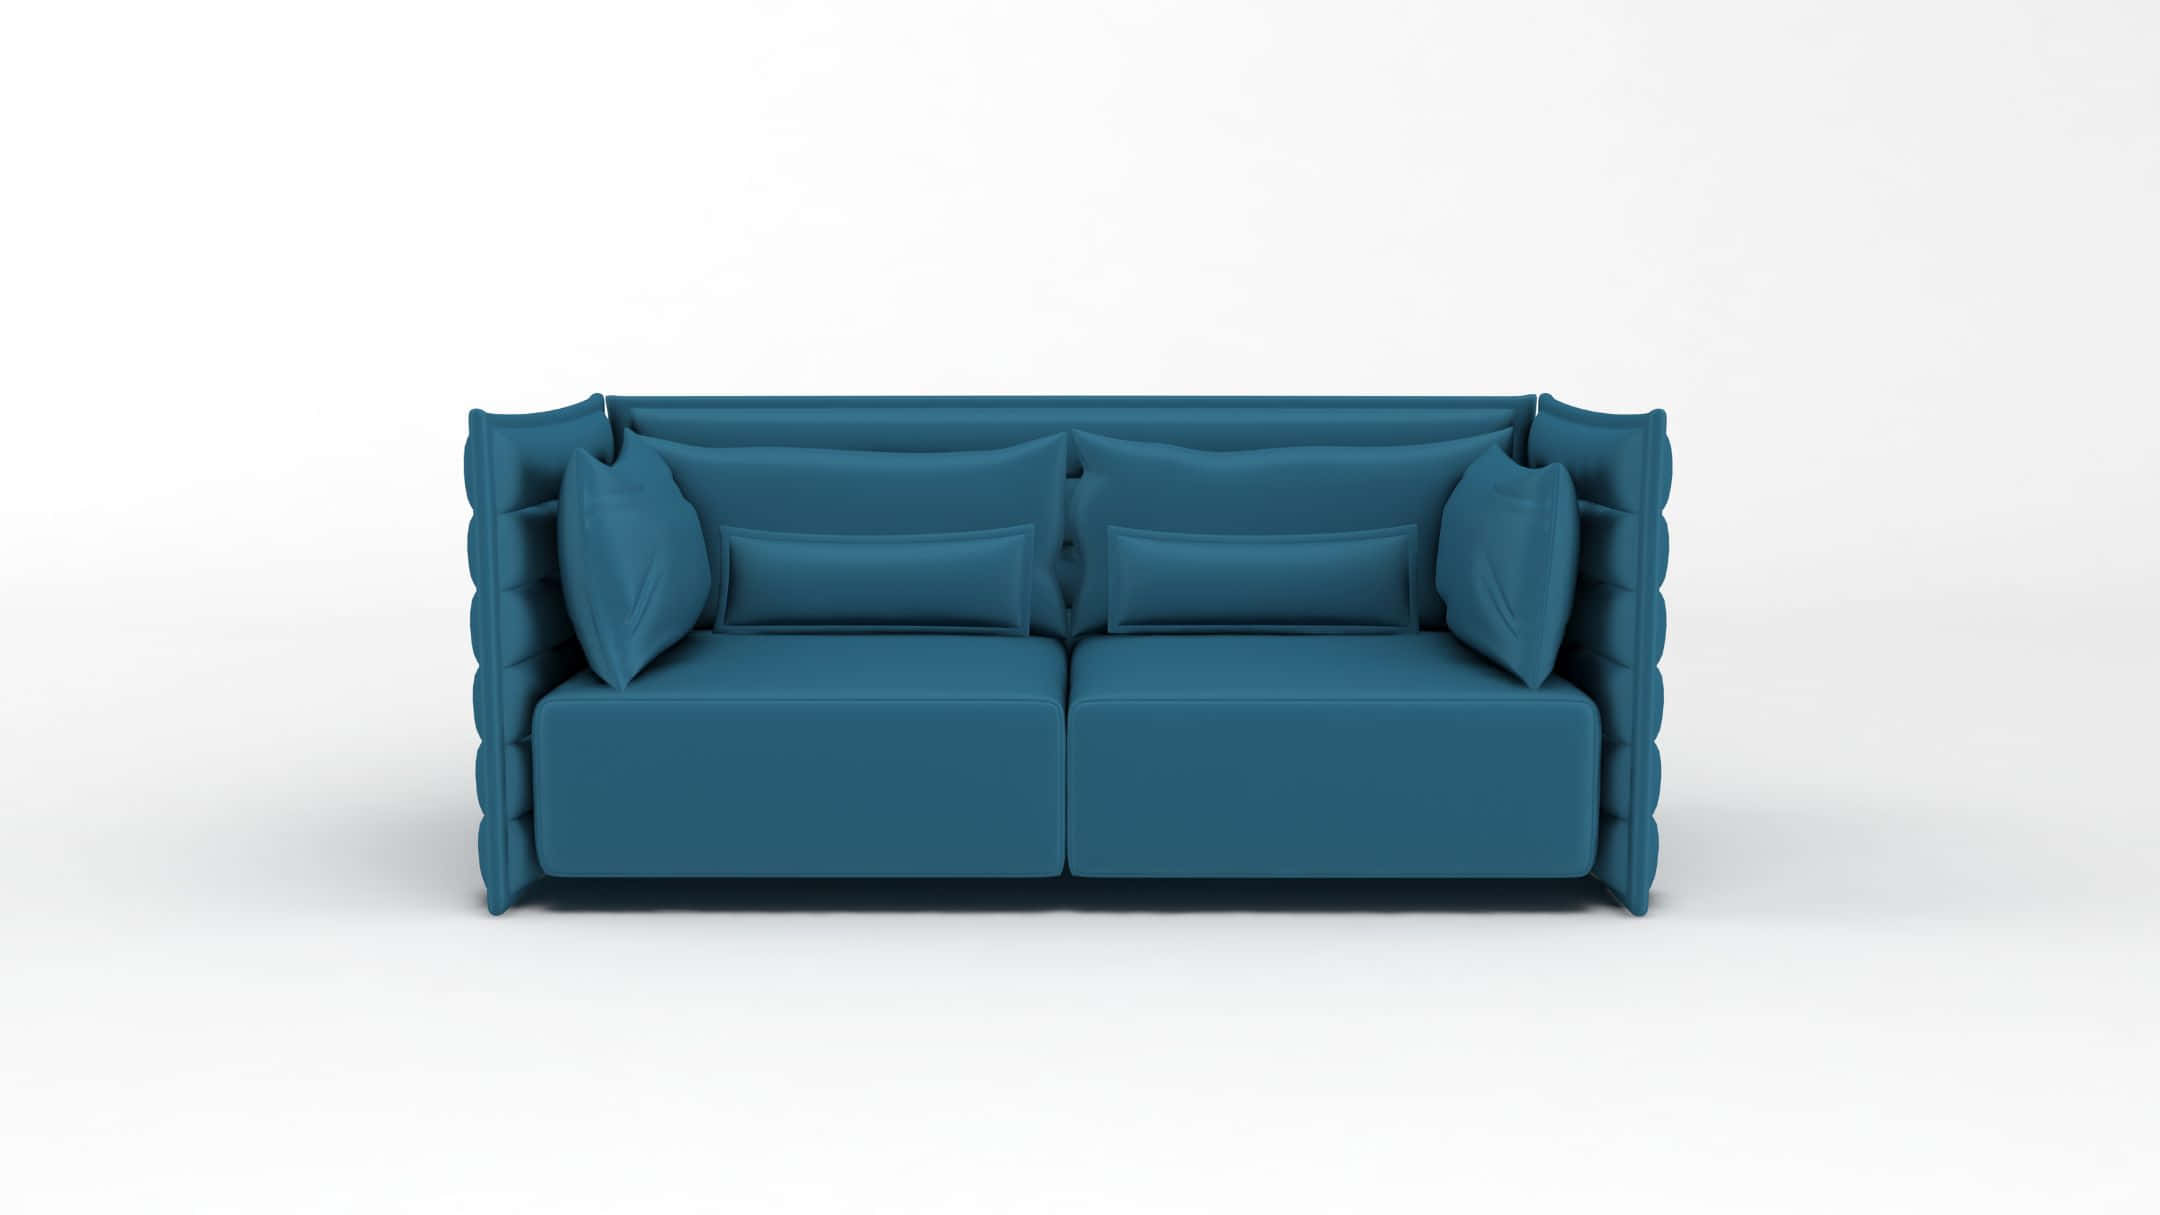 Enblå Sofa Med Puder På Den